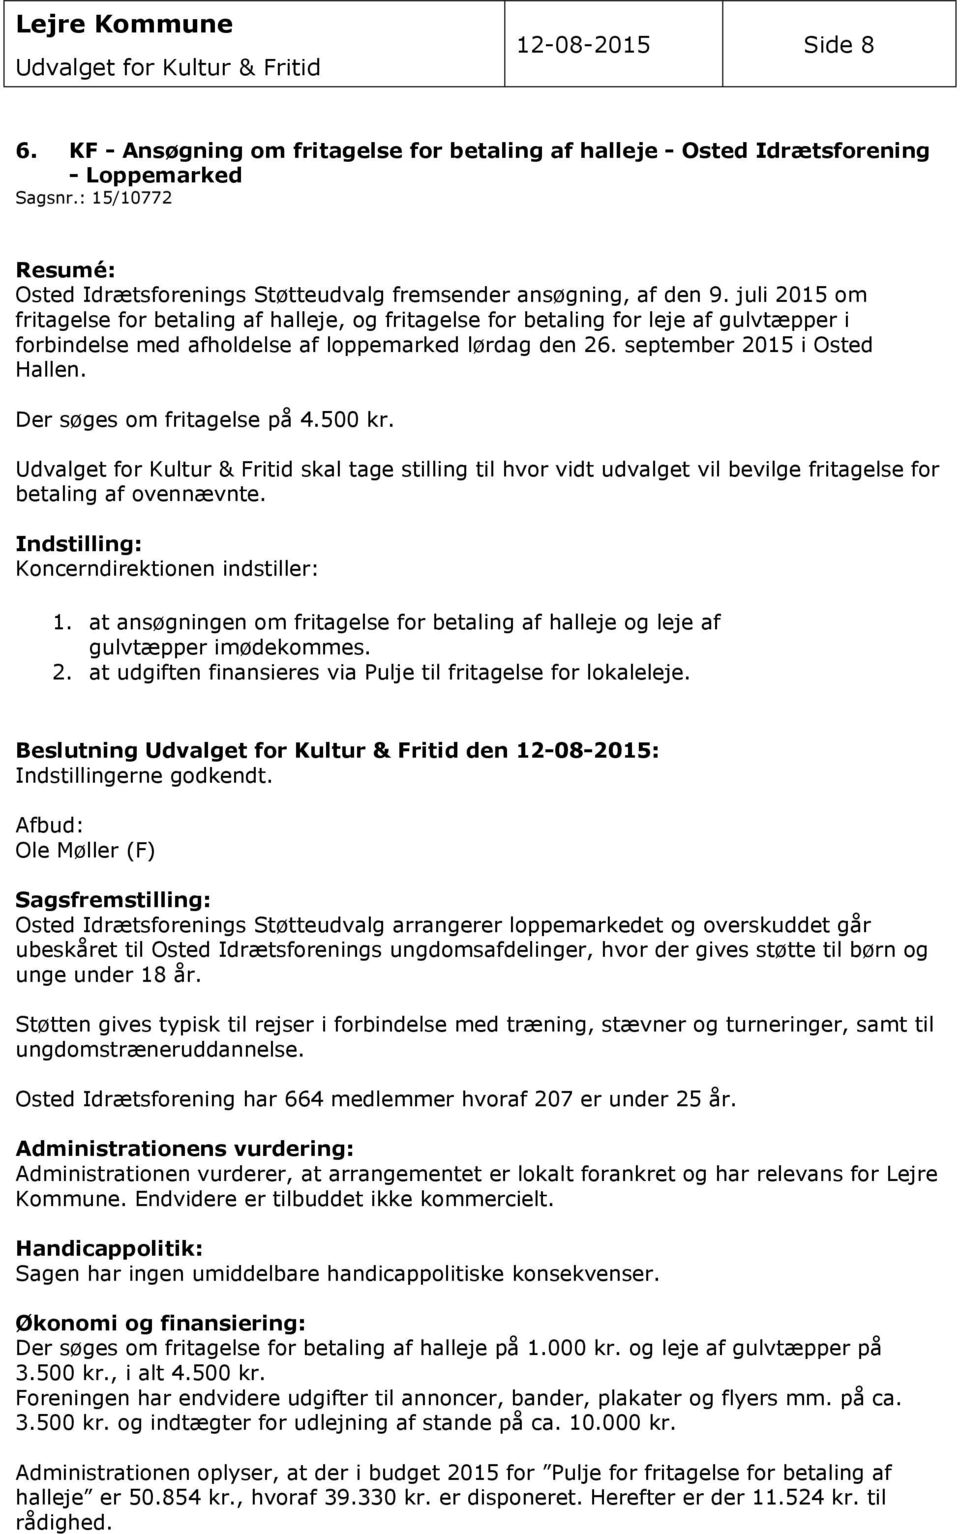 juli 2015 om fritagelse for betaling af halleje, og fritagelse for betaling for leje af gulvtæpper i forbindelse med afholdelse af loppemarked lørdag den 26. september 2015 i Osted Hallen.